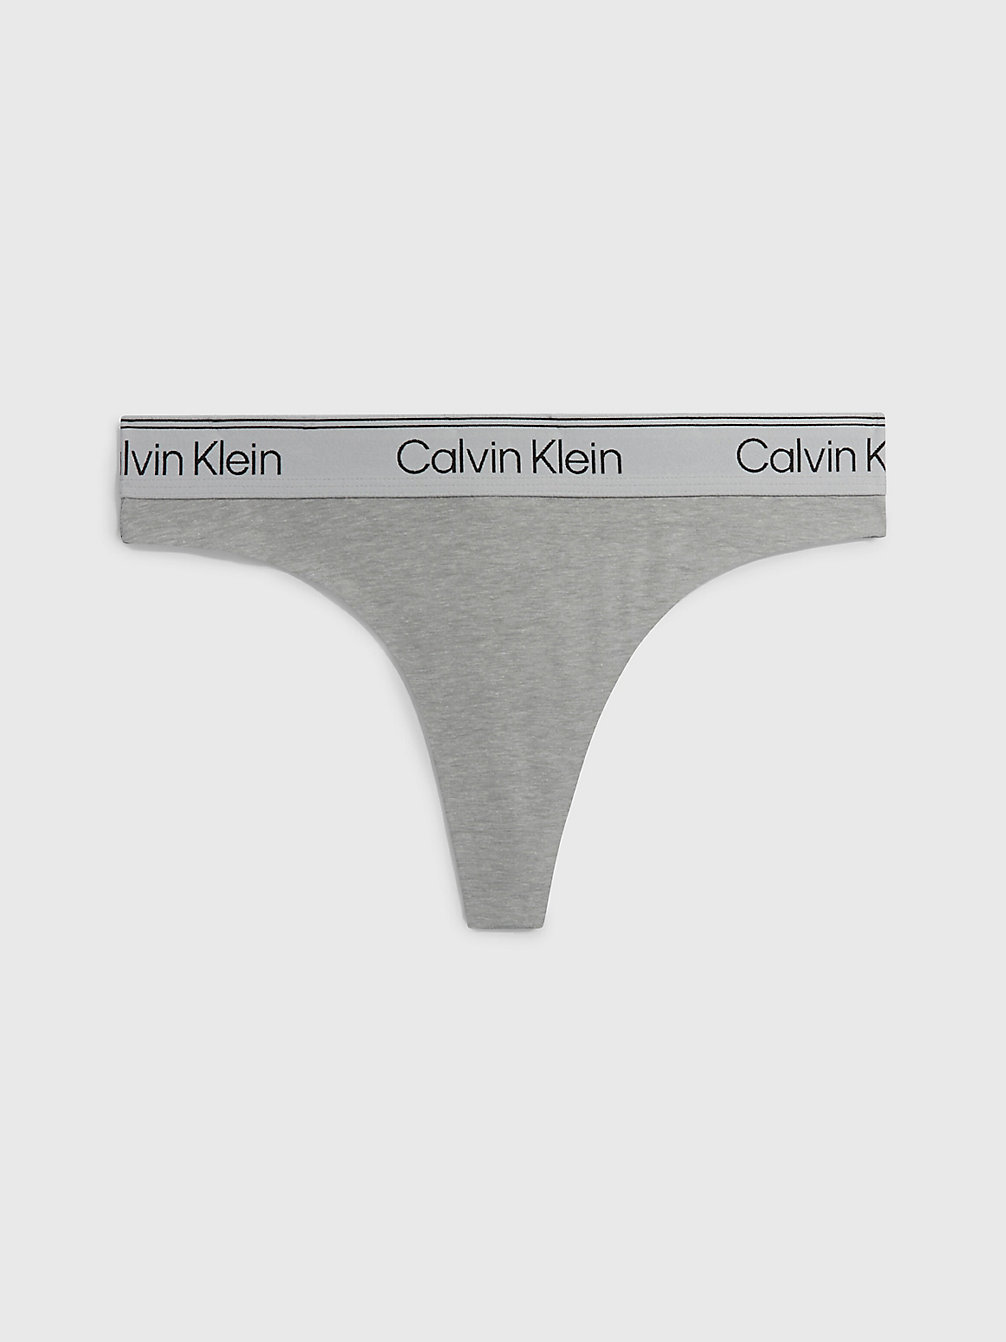 ATH GREY HEATHER String - Athletic Cotton undefined Damen Calvin Klein